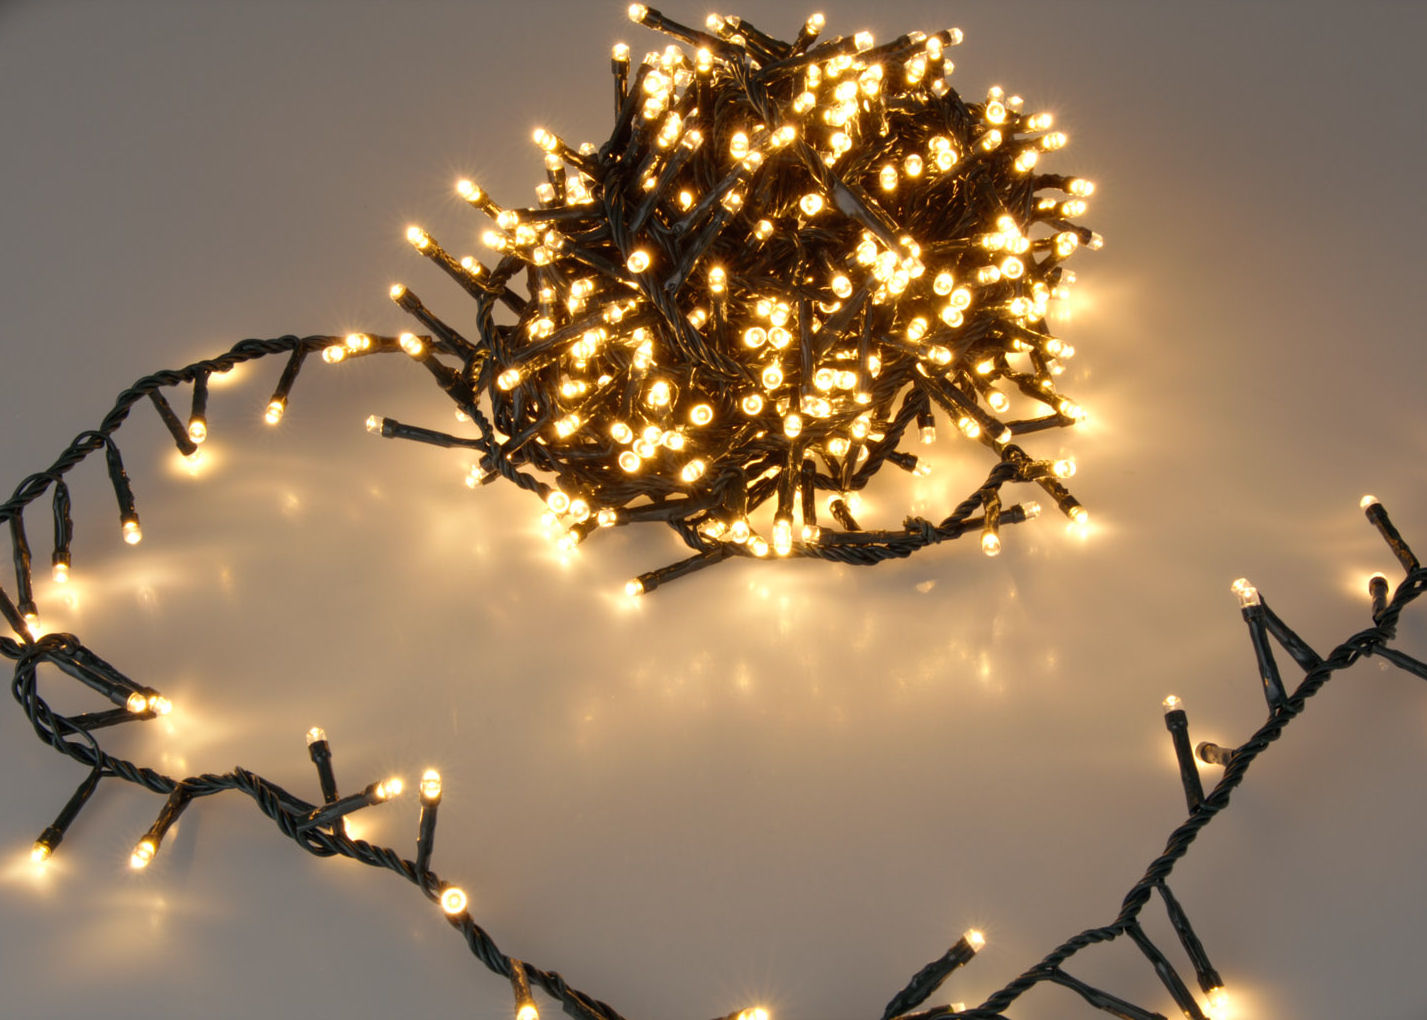 30 LED Biene Solar Lichterkette Weihnachtslichterkette Beleuchtung Innen Außen